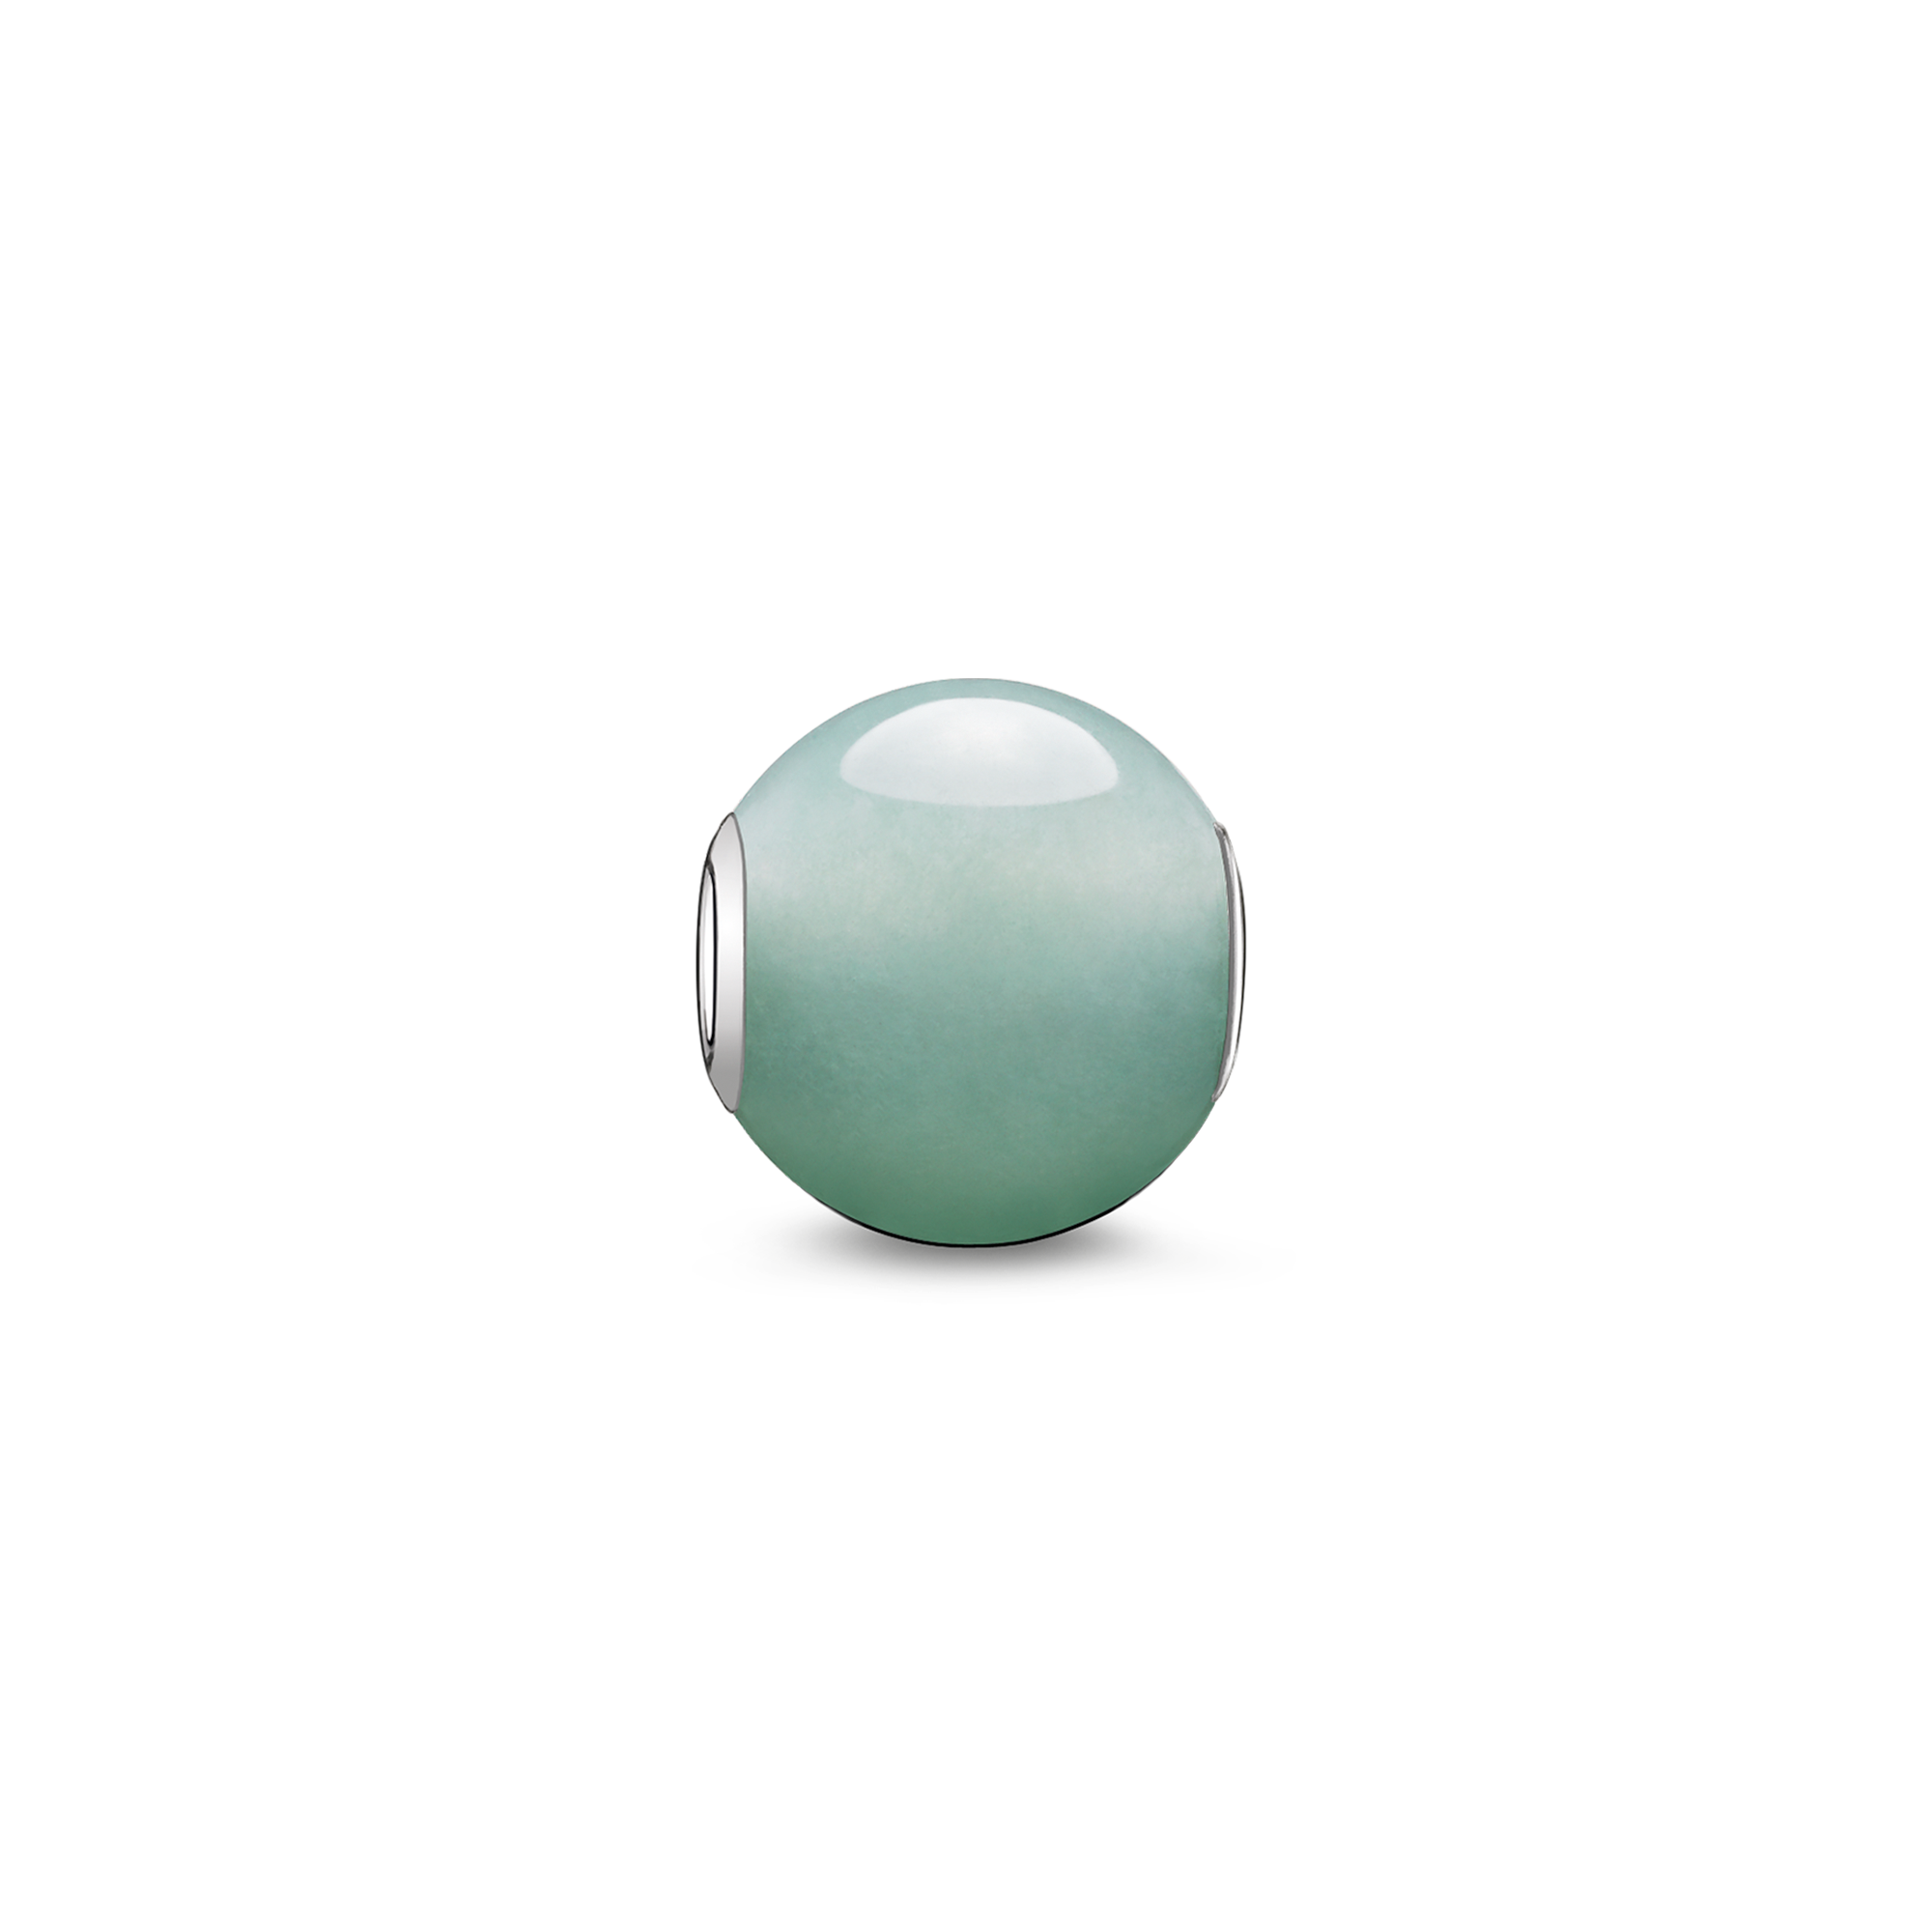 Der Optimismus schenkende Grüne-Aventurin-Bead strahlt besonders schön dank seiner glänzend polierten Oberfläche. Seinen einzigartigen Glanz entfaltet er in Kombination mit femininen Bicolor- und Tricolor-Beads. - 0